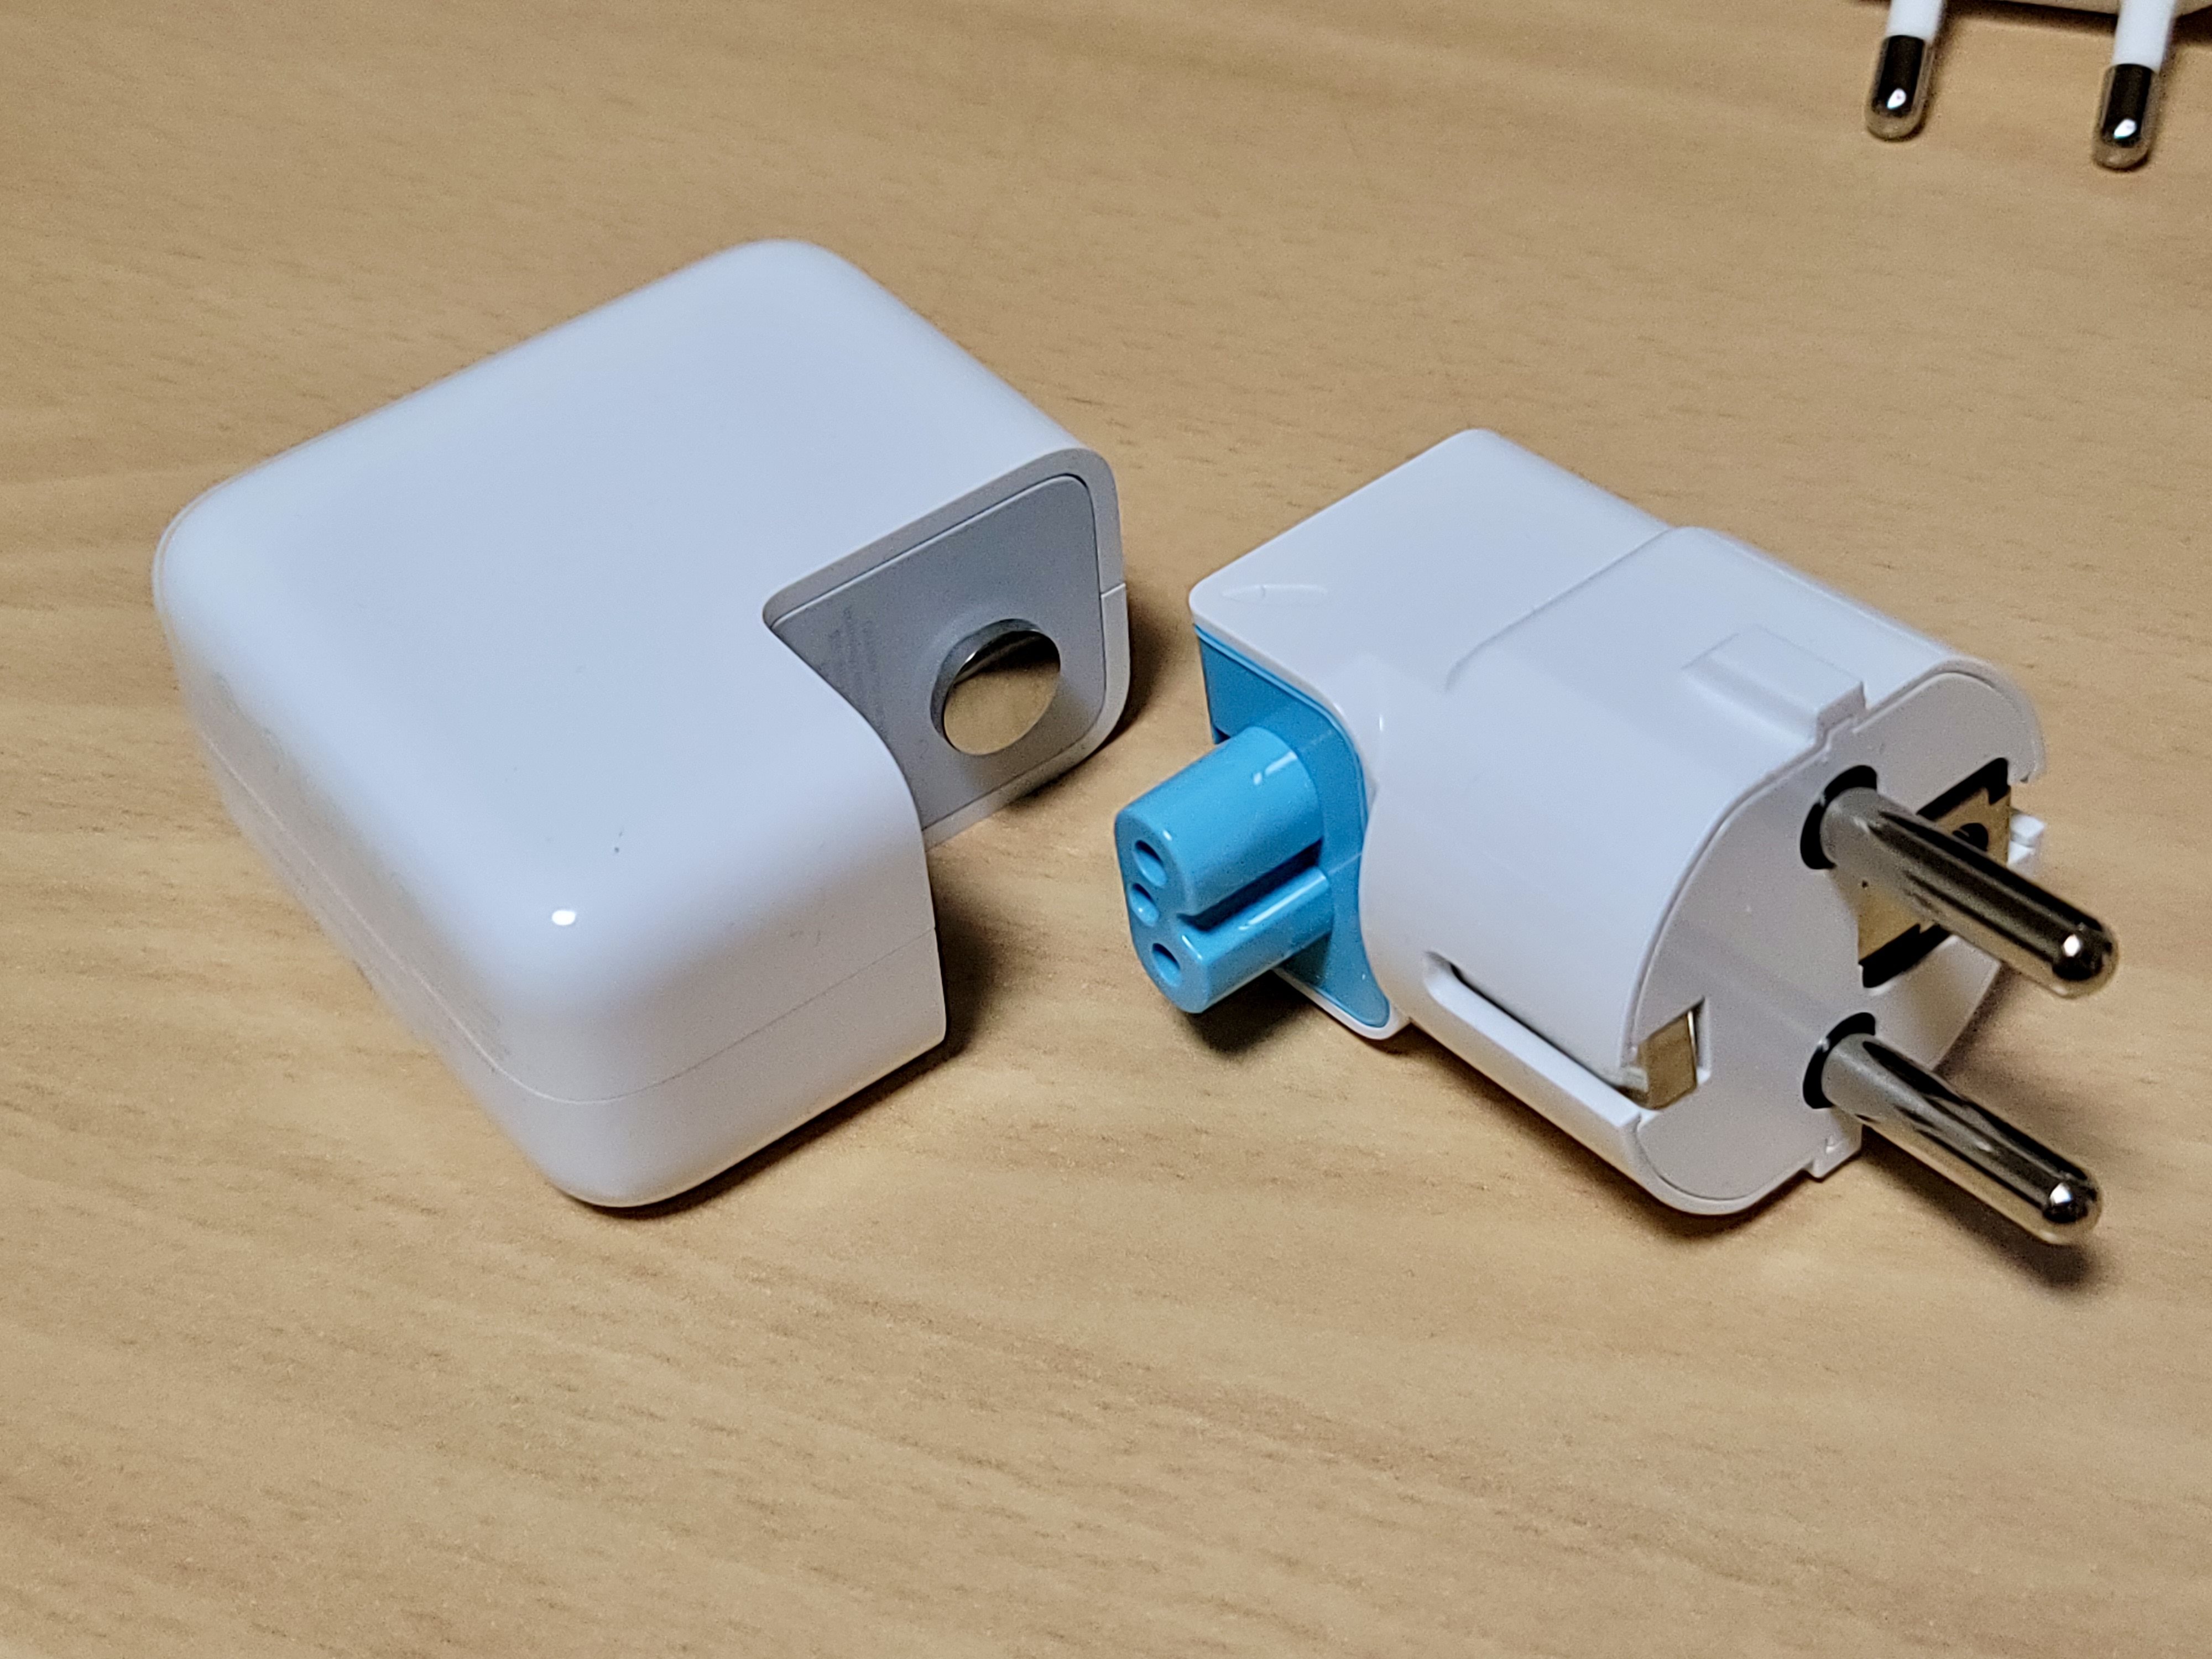 두들-접지-플러그와-플러그가-제거된-애플-정품-충전기를-함께-촬영한-사진